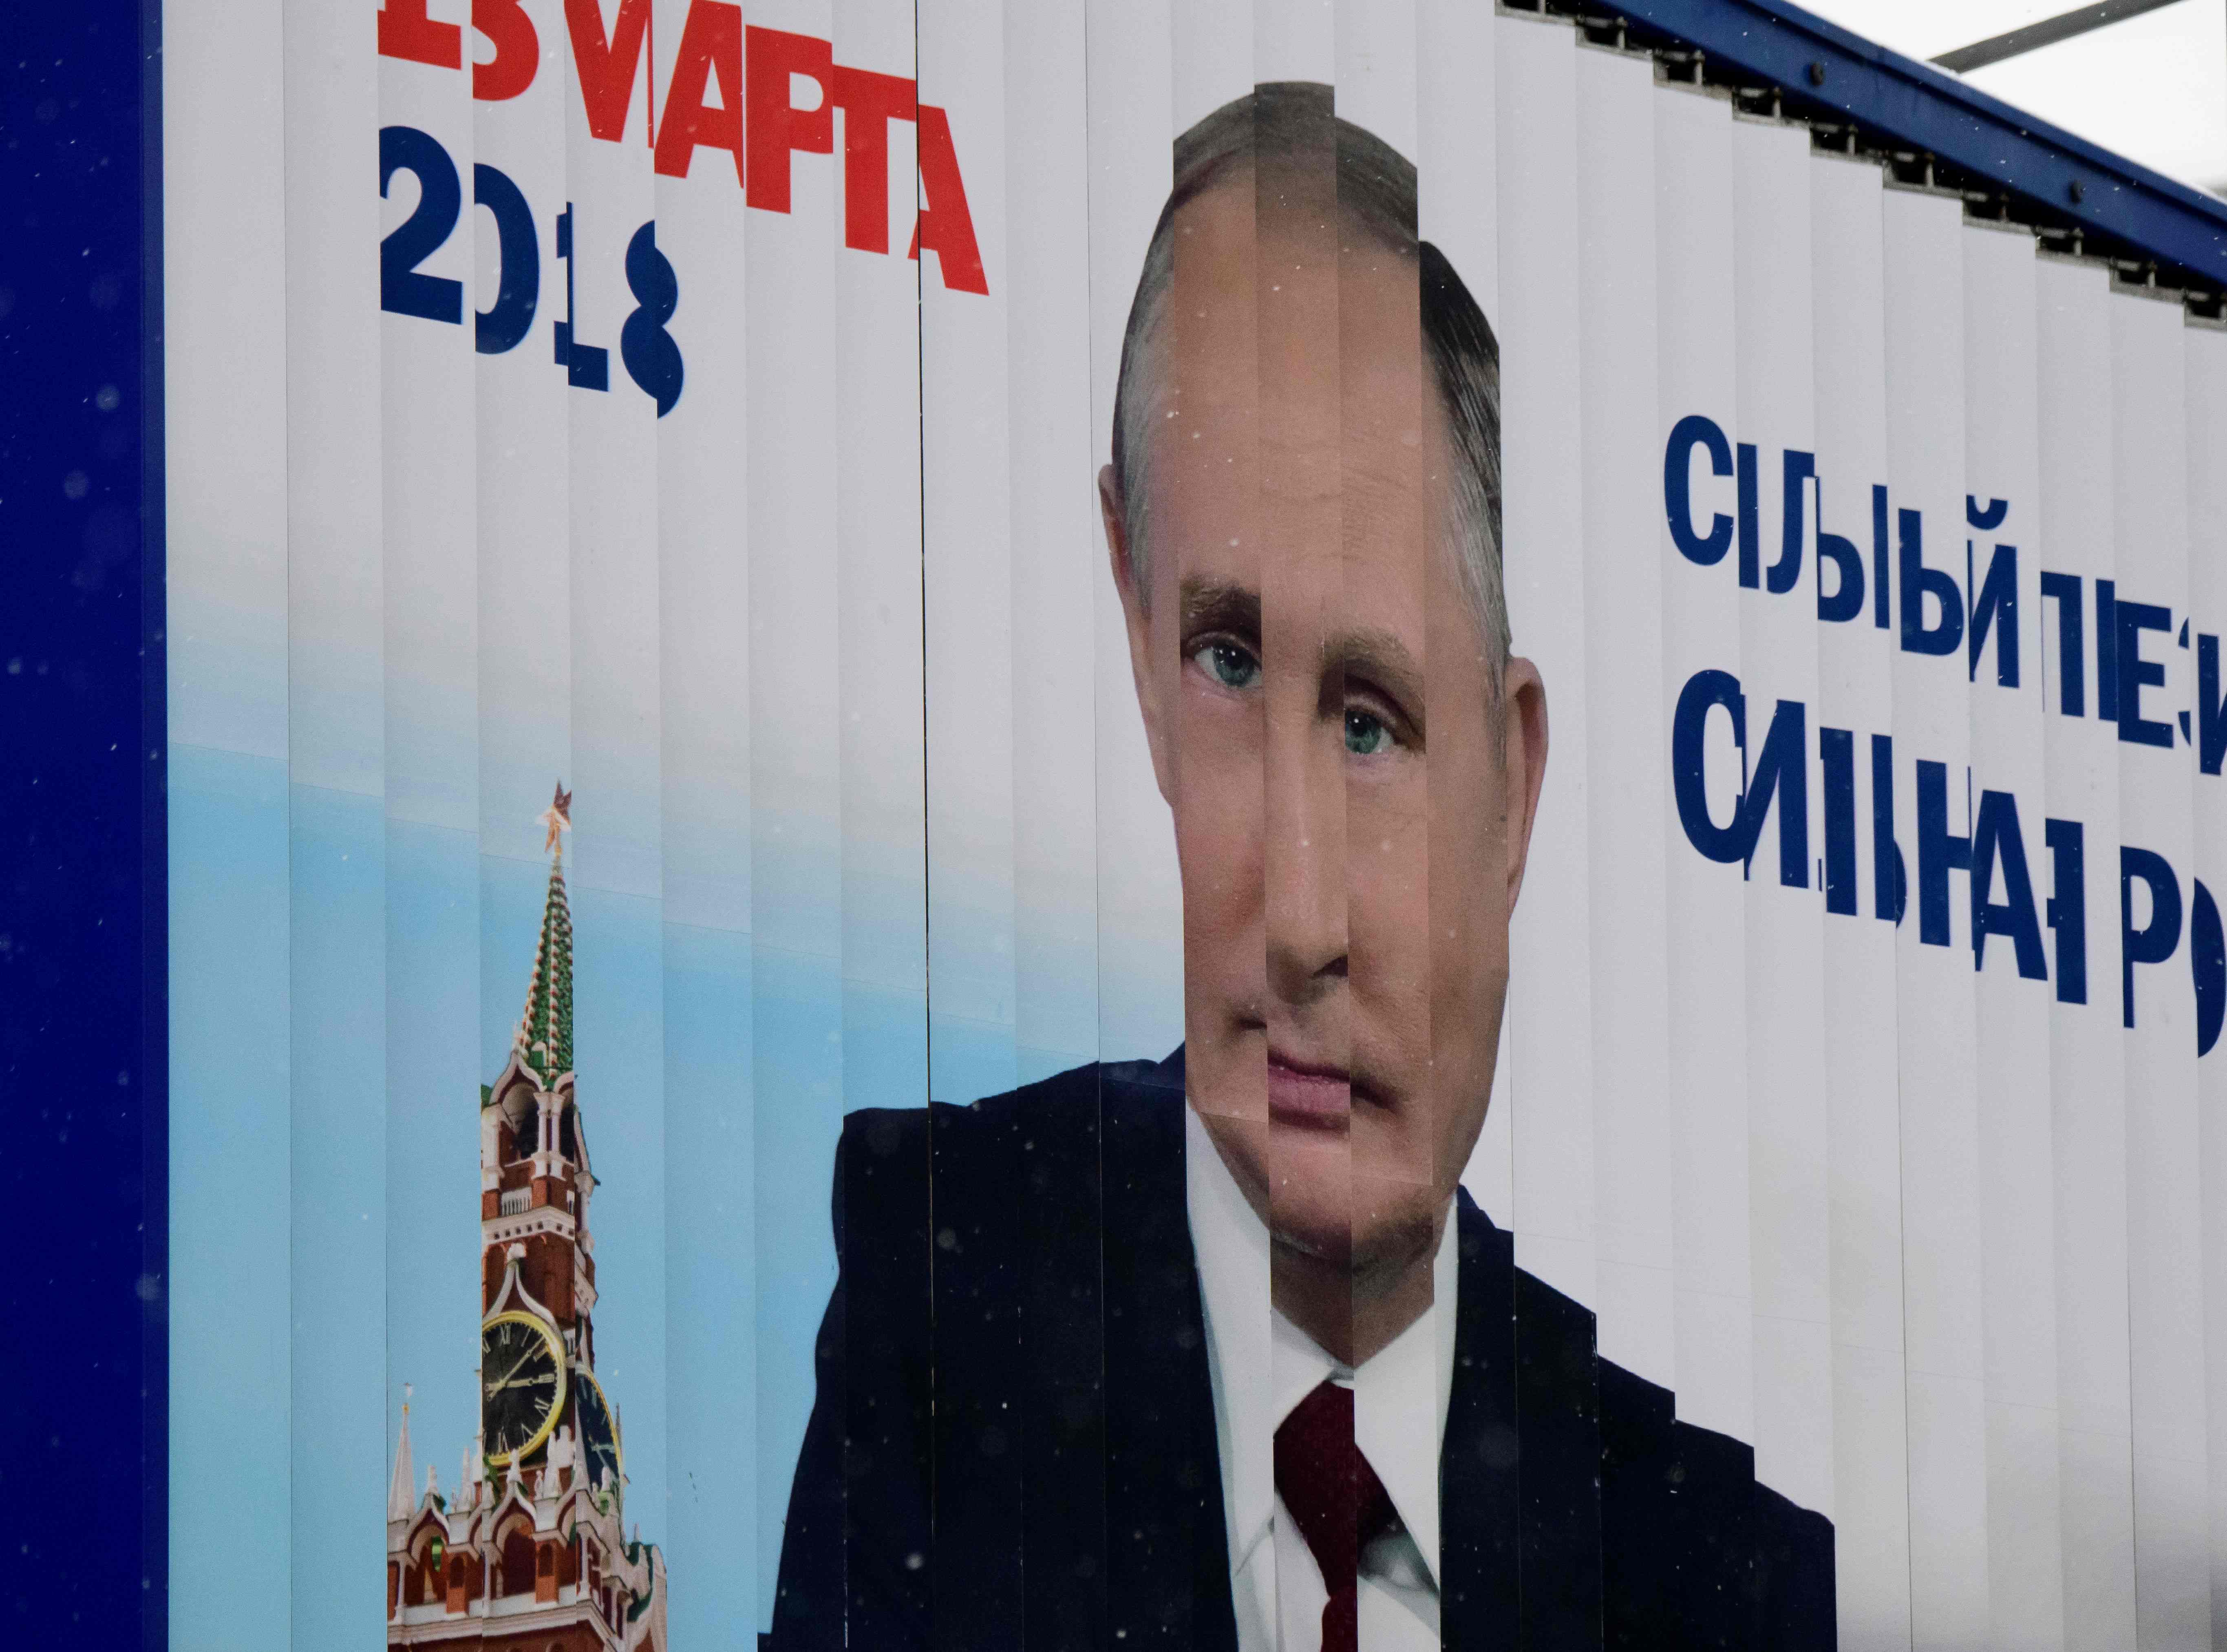 لافتات دعم الرئيس الروسى فى شوارع موسكو